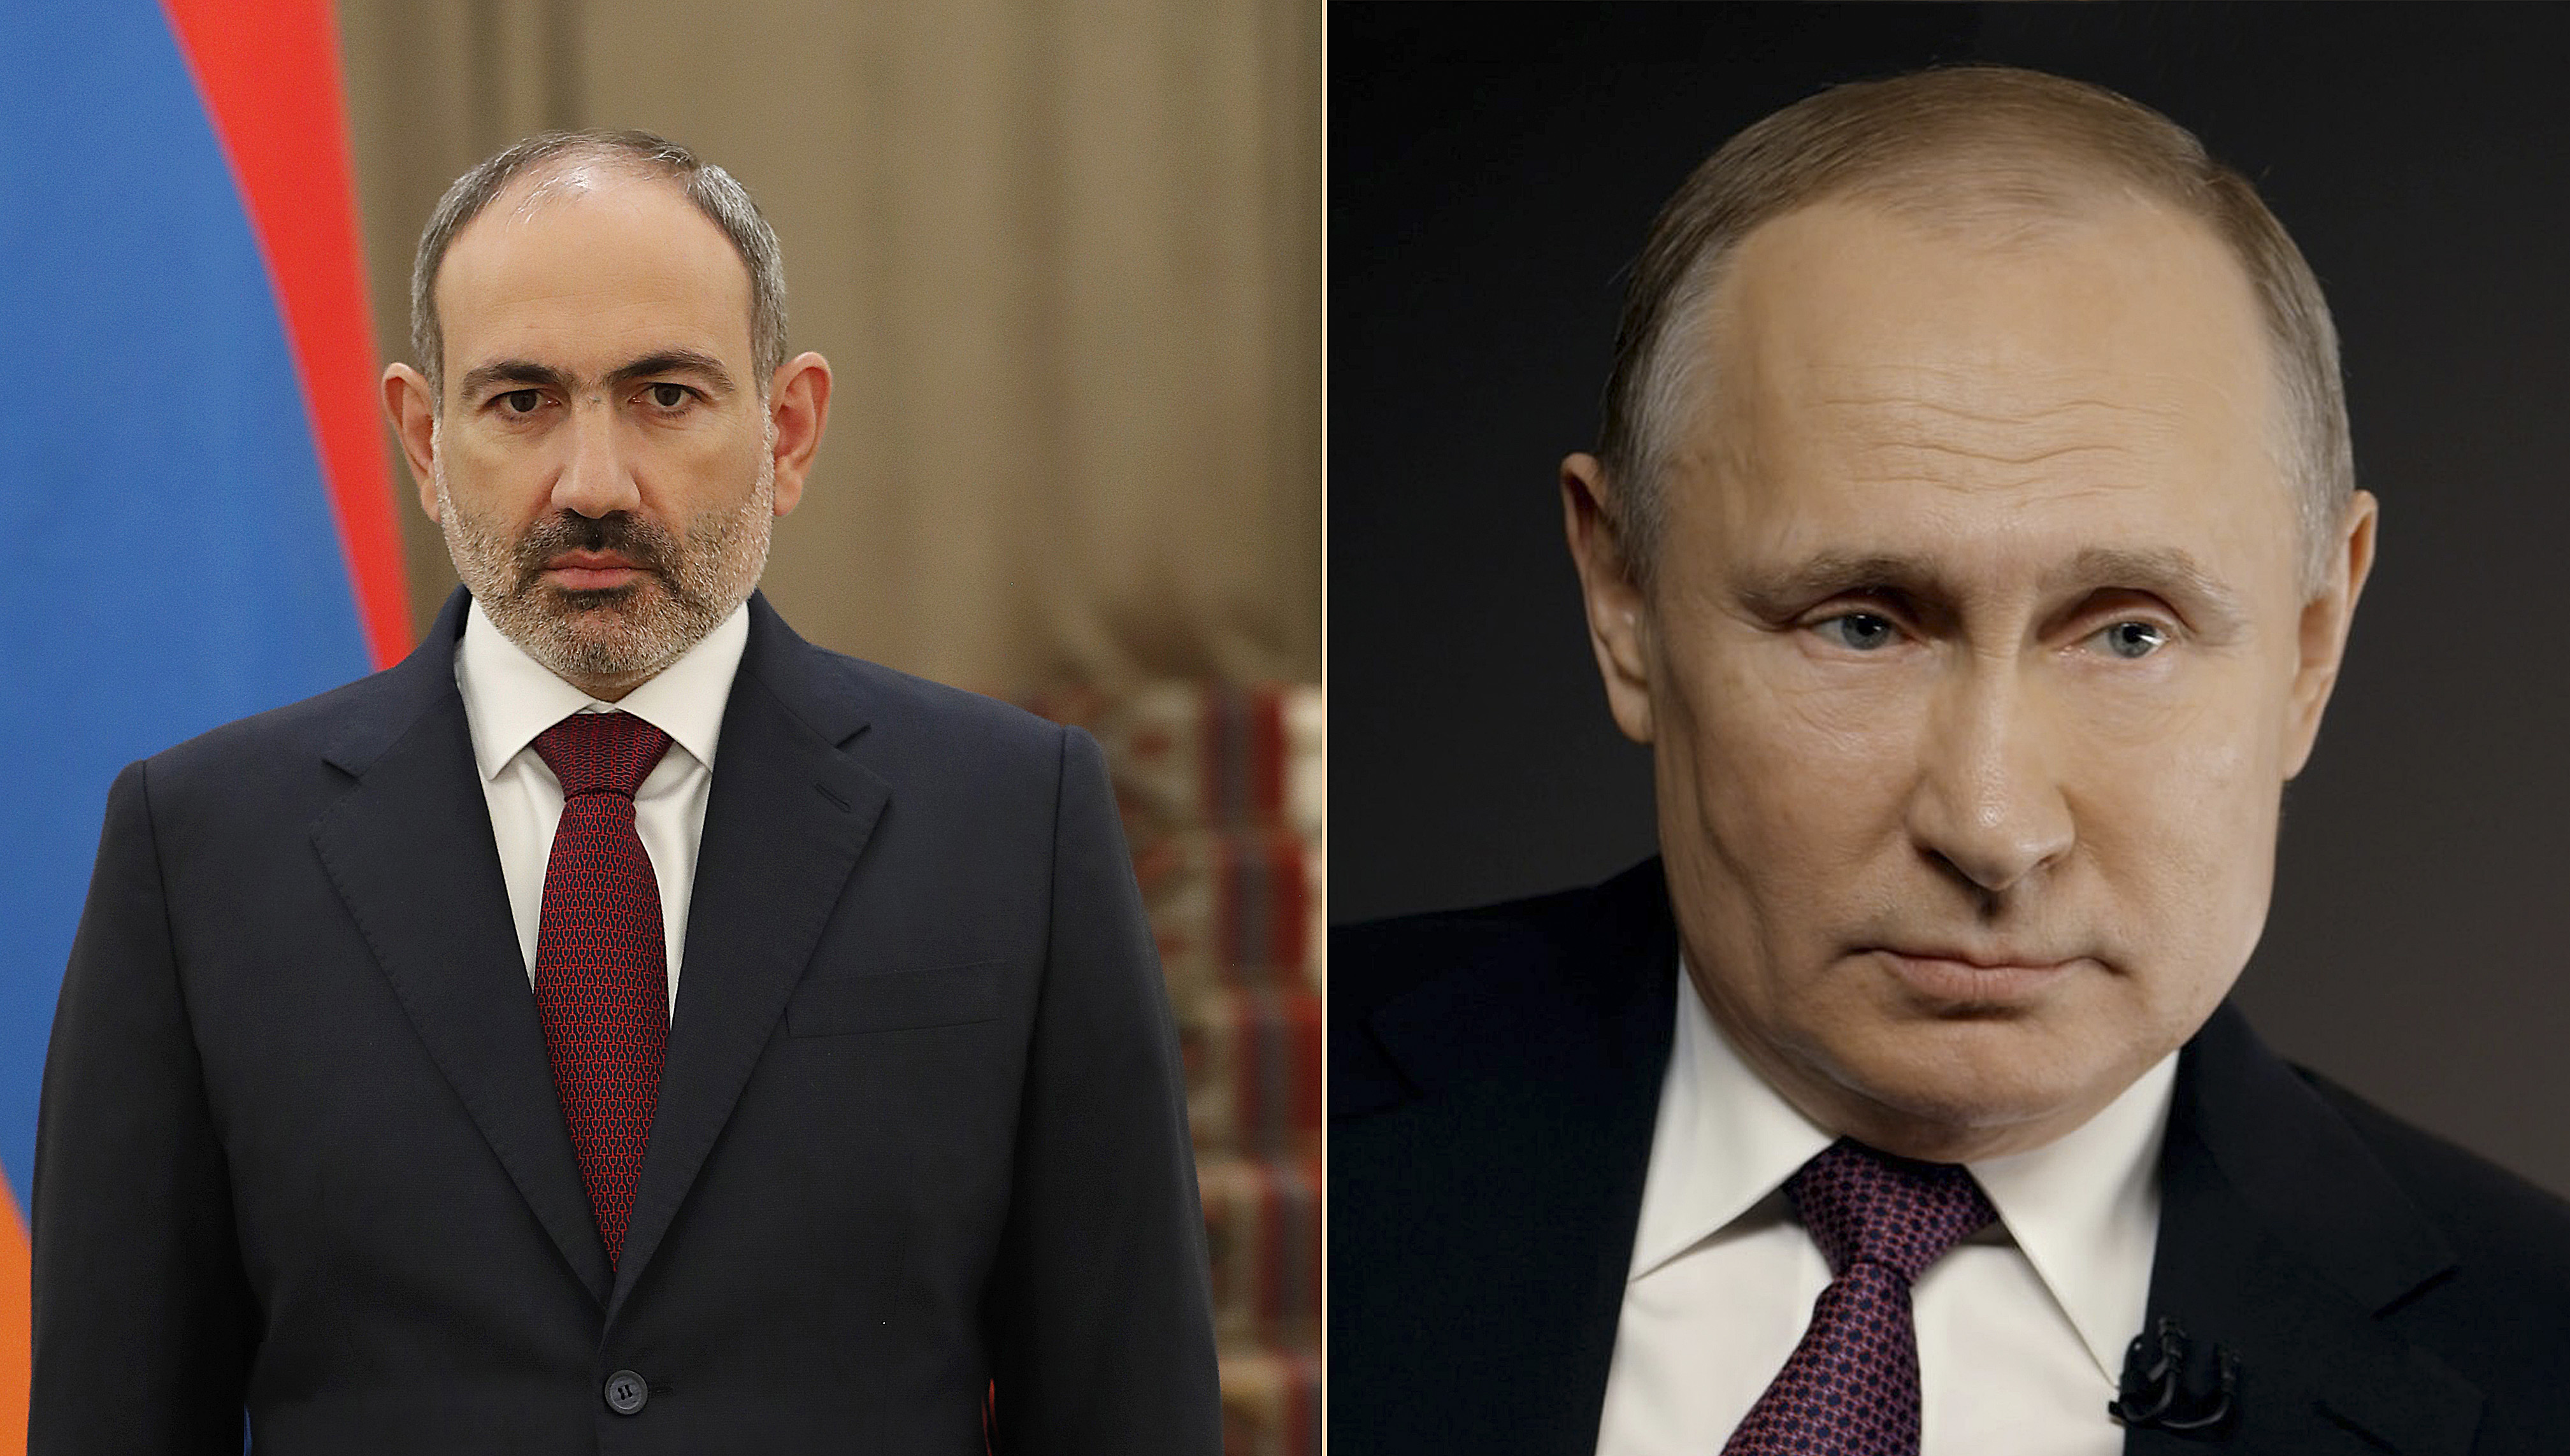 Ermenistan Başbakanı Vladimir Putin ile bölgesel meseleleri ve Ermenistan-Azerbaycan sınır durumunu ele aldı